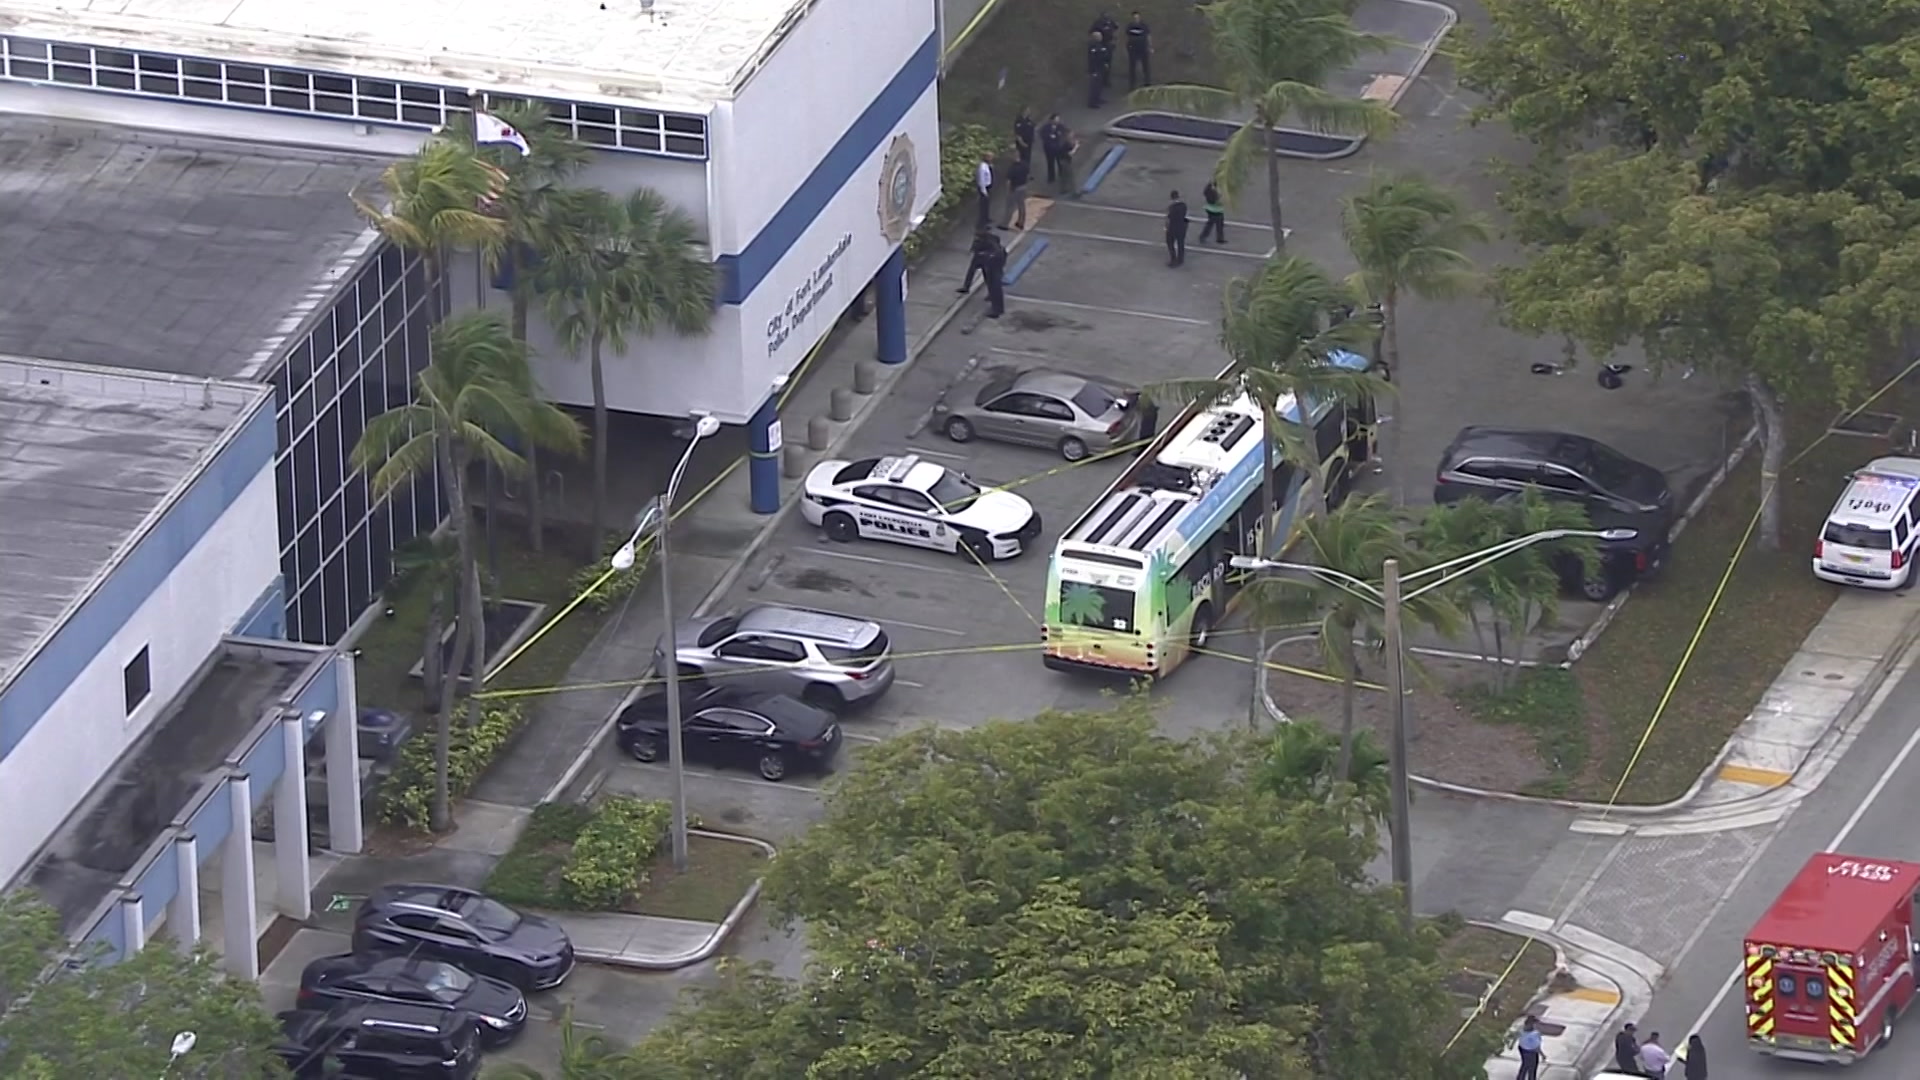 Gunman In Custody After 2 People Killed In Fort Lauderdale Bus Shooting